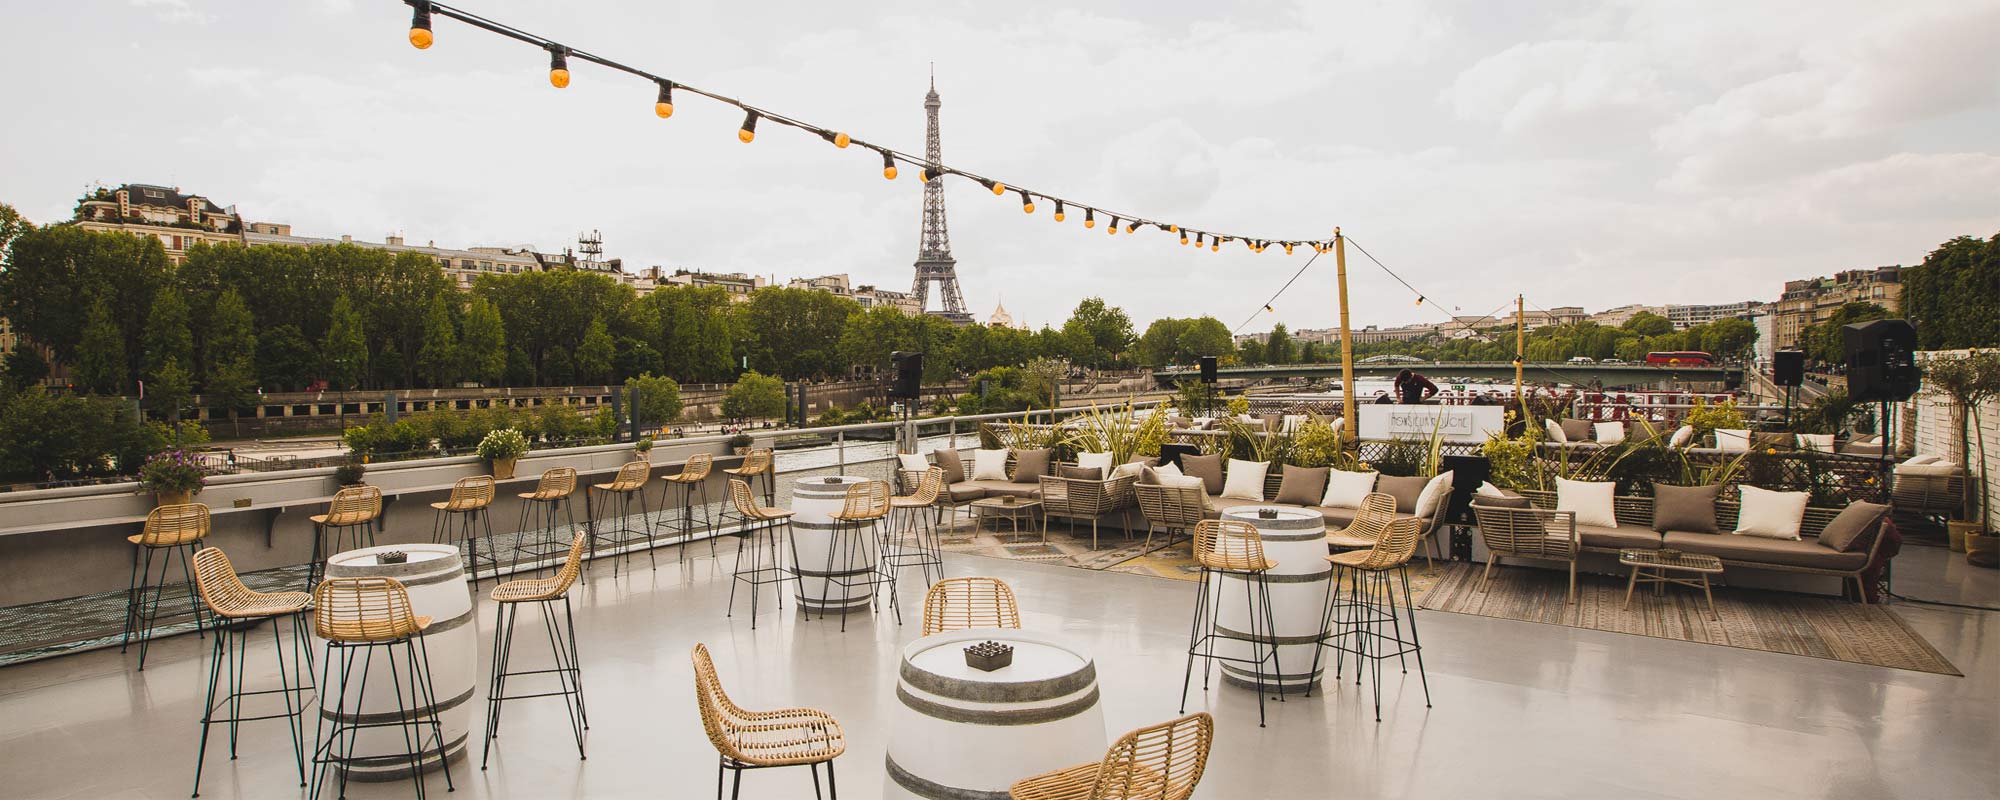 Terrace - Rooftop - Le Club restaurant Paris